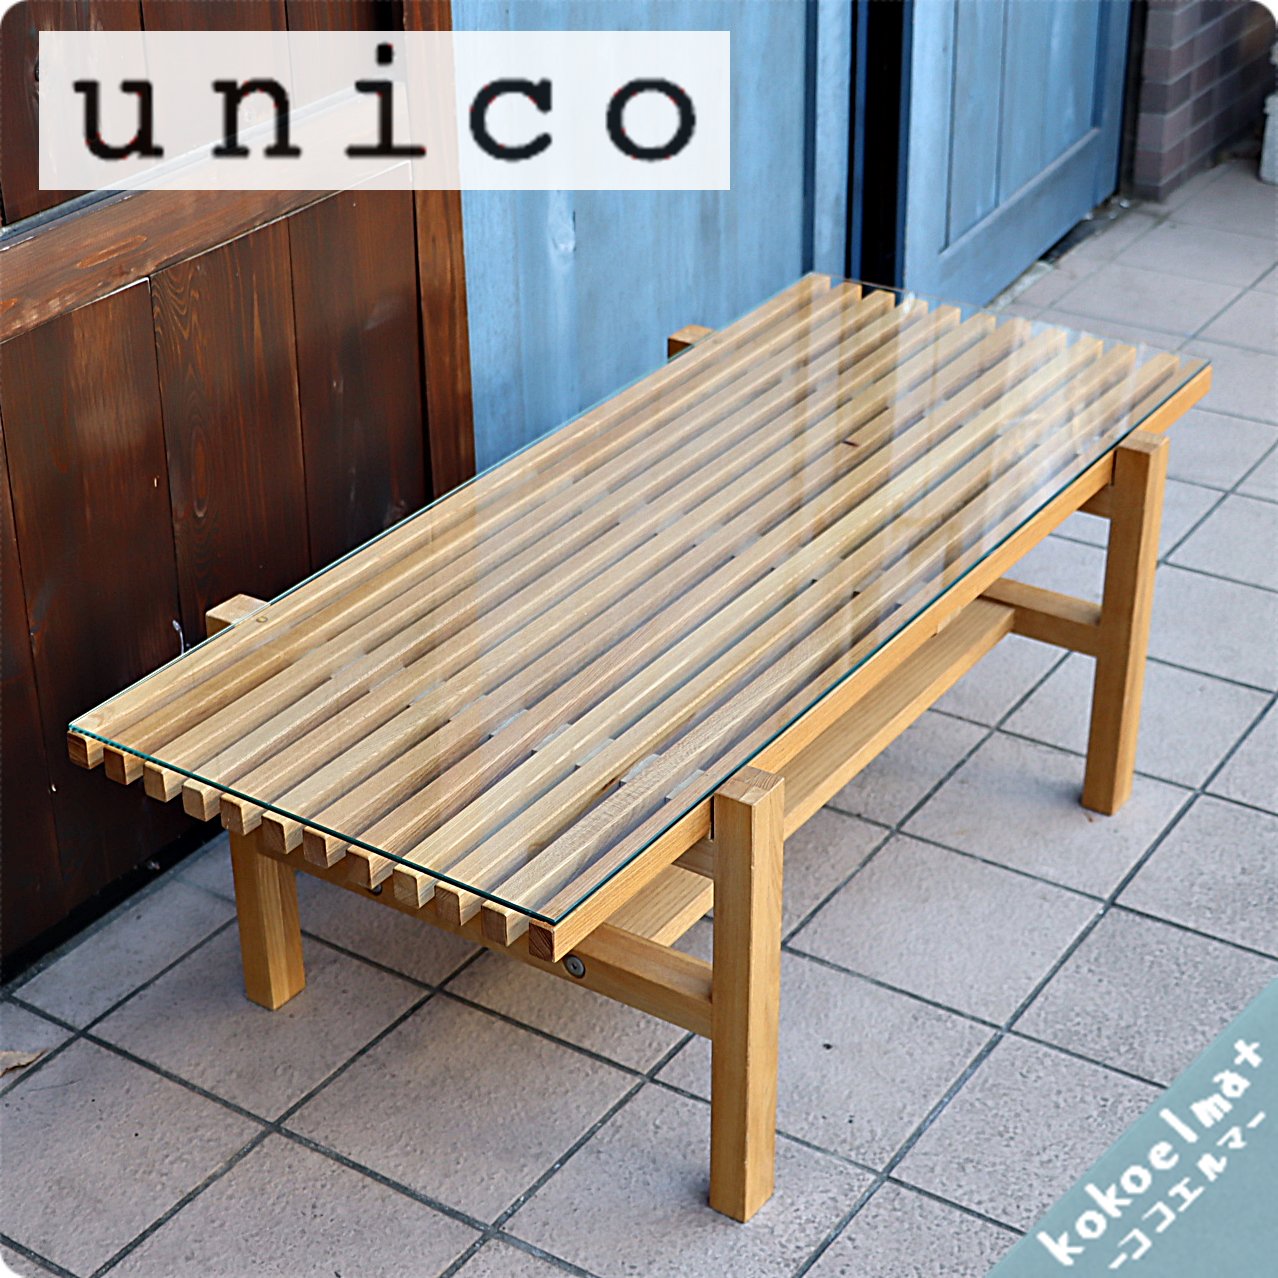 値下げ/unico(ウニコ)よりLIJN(レイン)シリーズのローテーブルです 